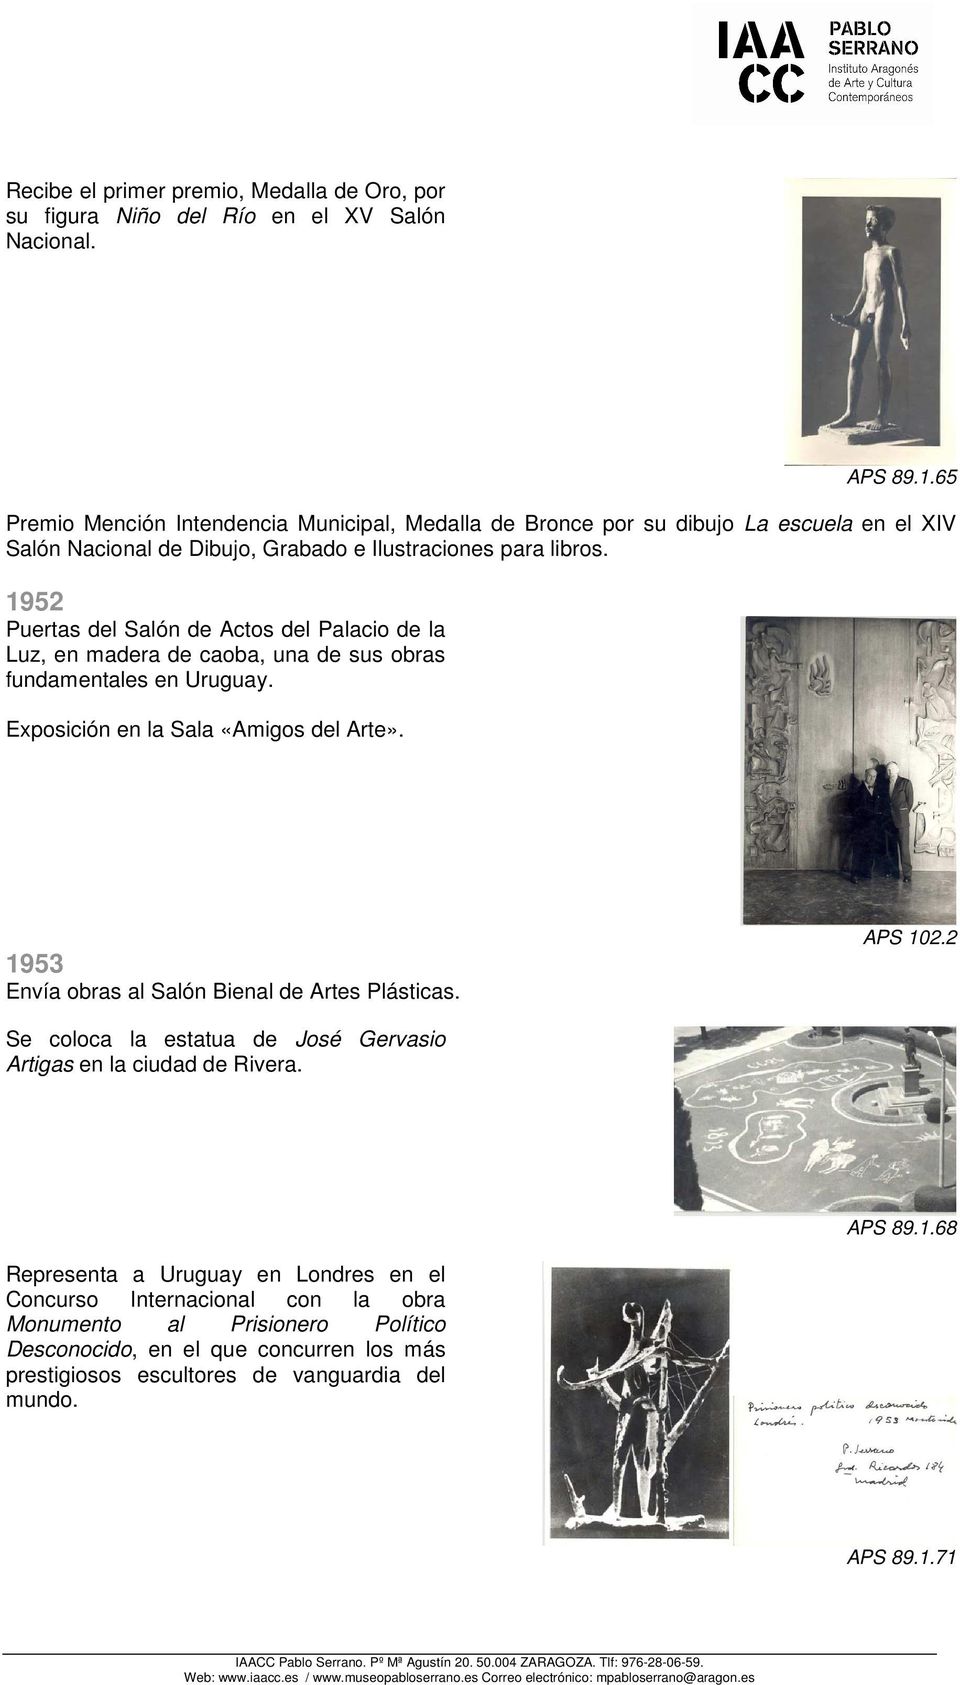 1952 Puertas del Salón de Actos del Palacio de la Luz, en madera de caoba, una de sus obras fundamentales en Uruguay. Exposición en la Sala «Amigos del Arte».